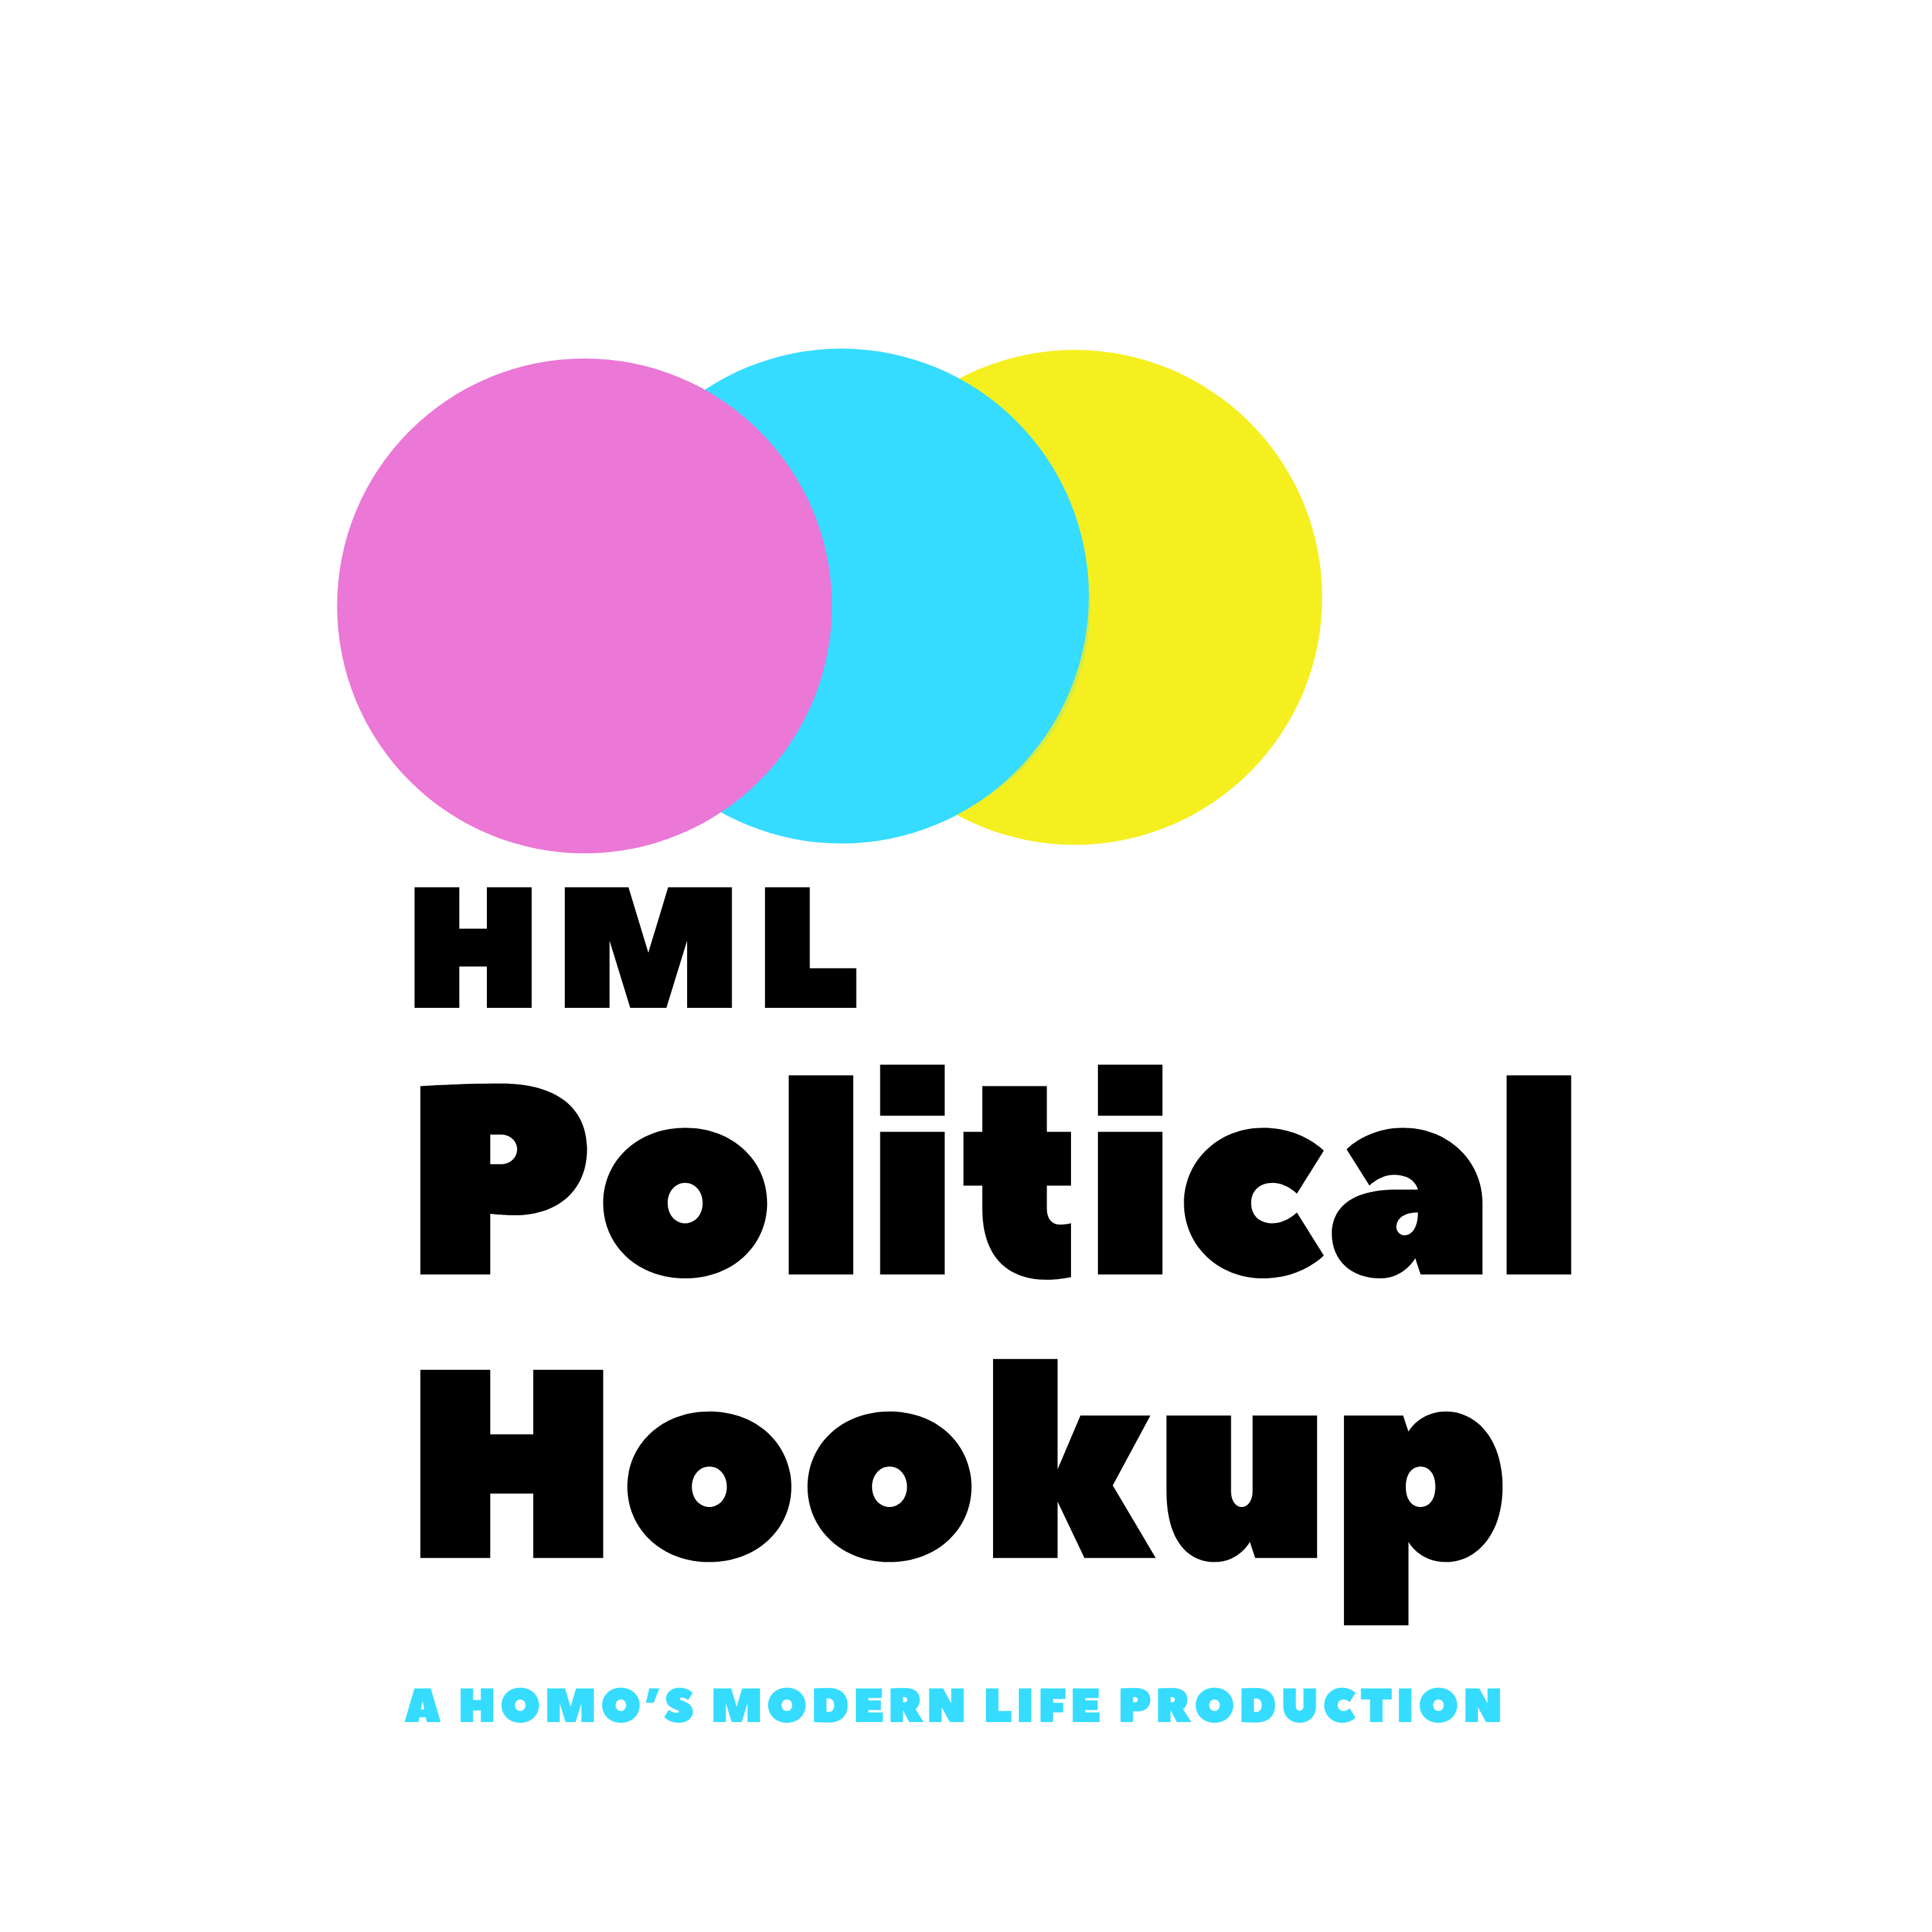 HML's Political Hookup